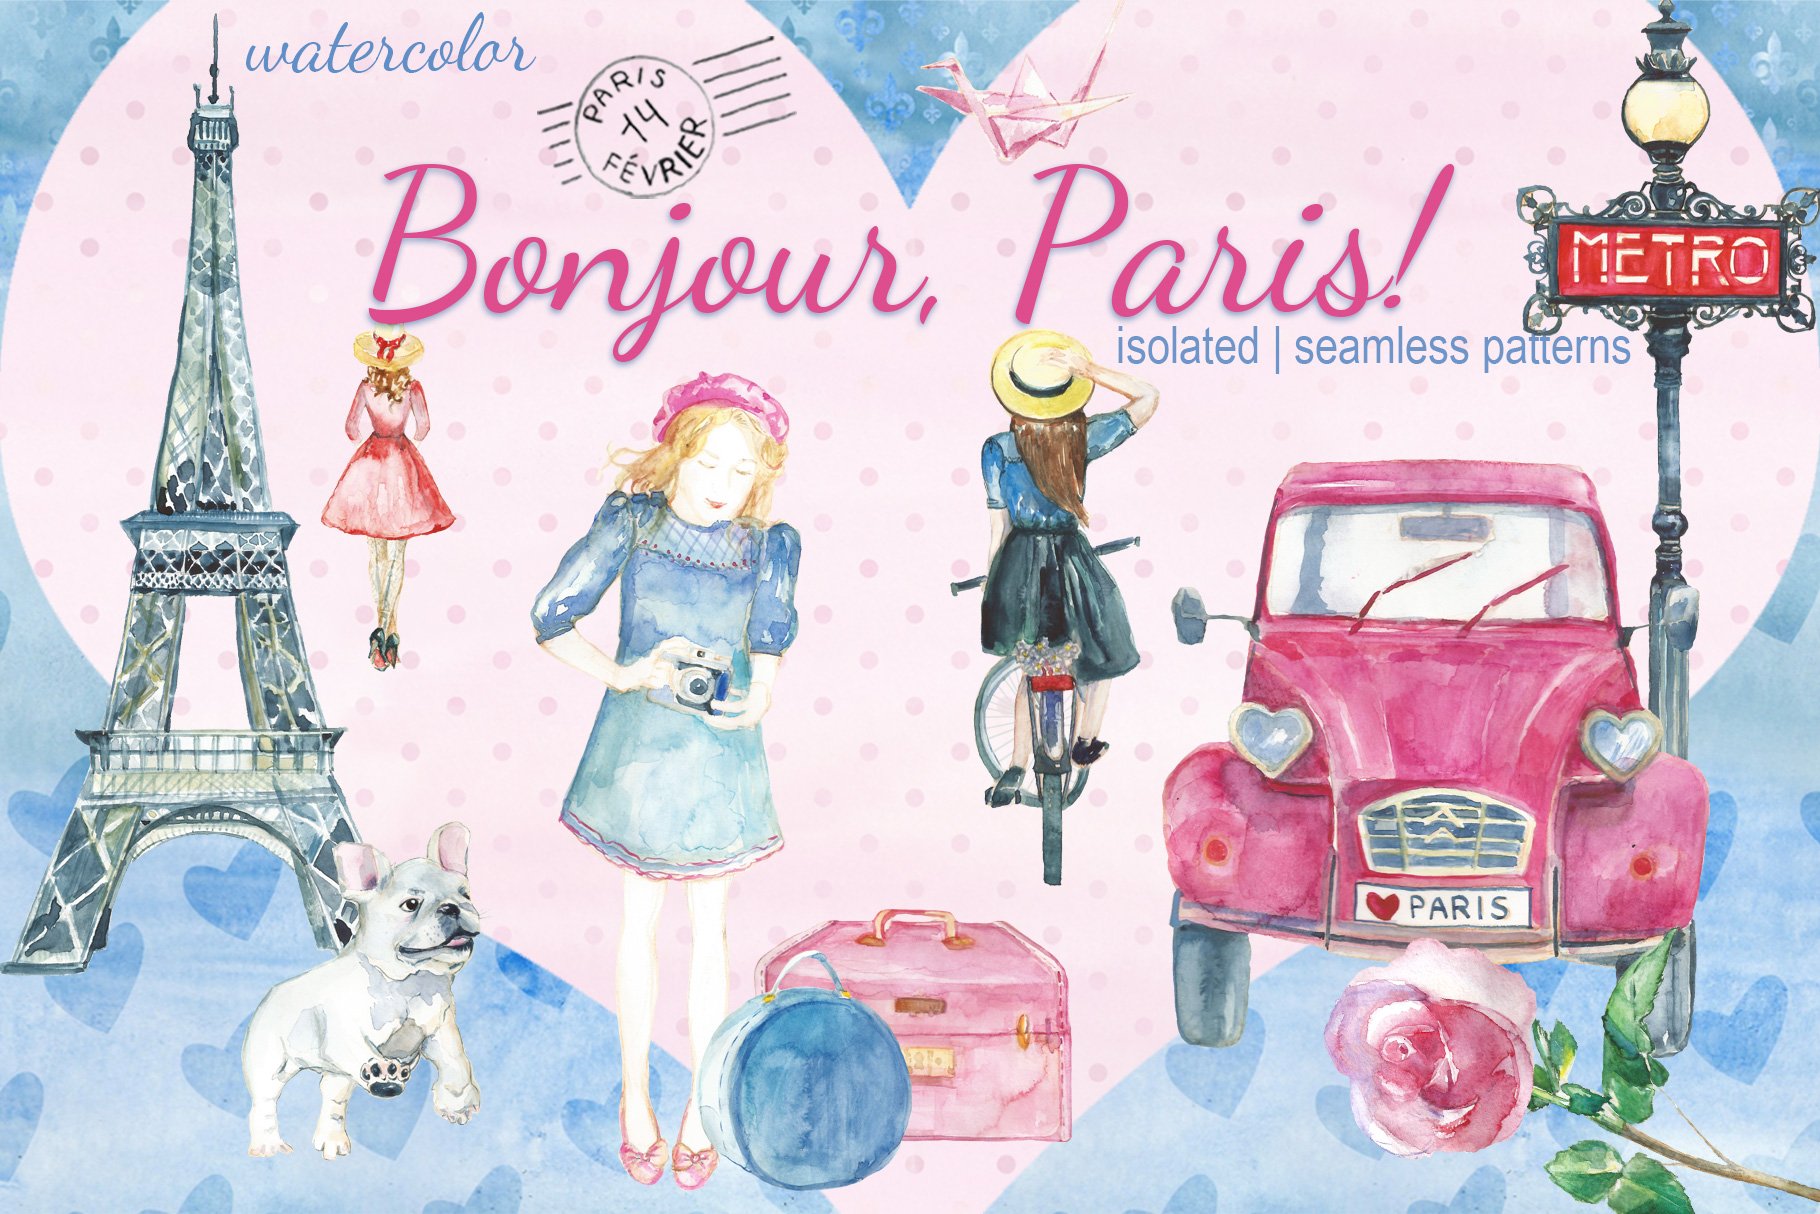 Bonjour, Paris! watercolor set cover image.